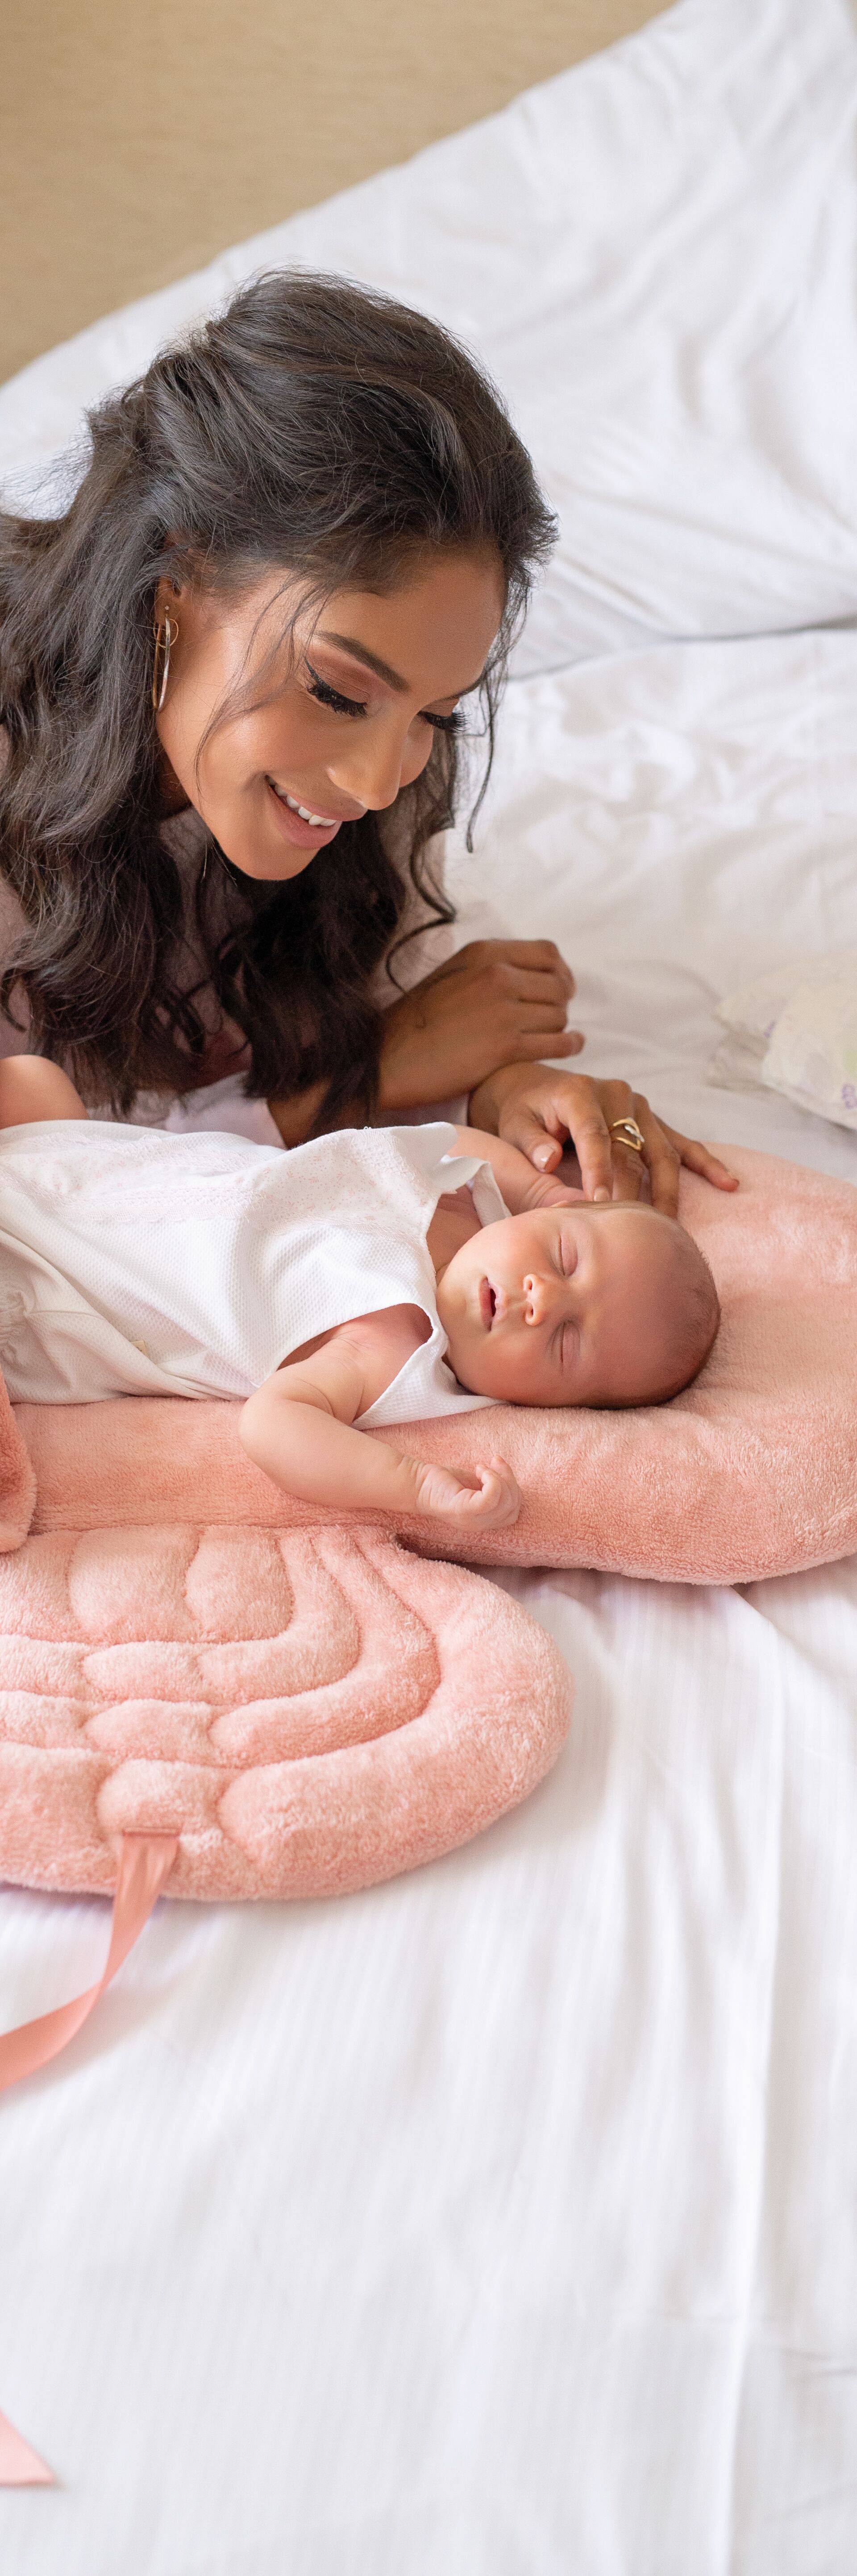 Baby Angle Wings & Violeta -  jastuci koje će svaka beba voljeti